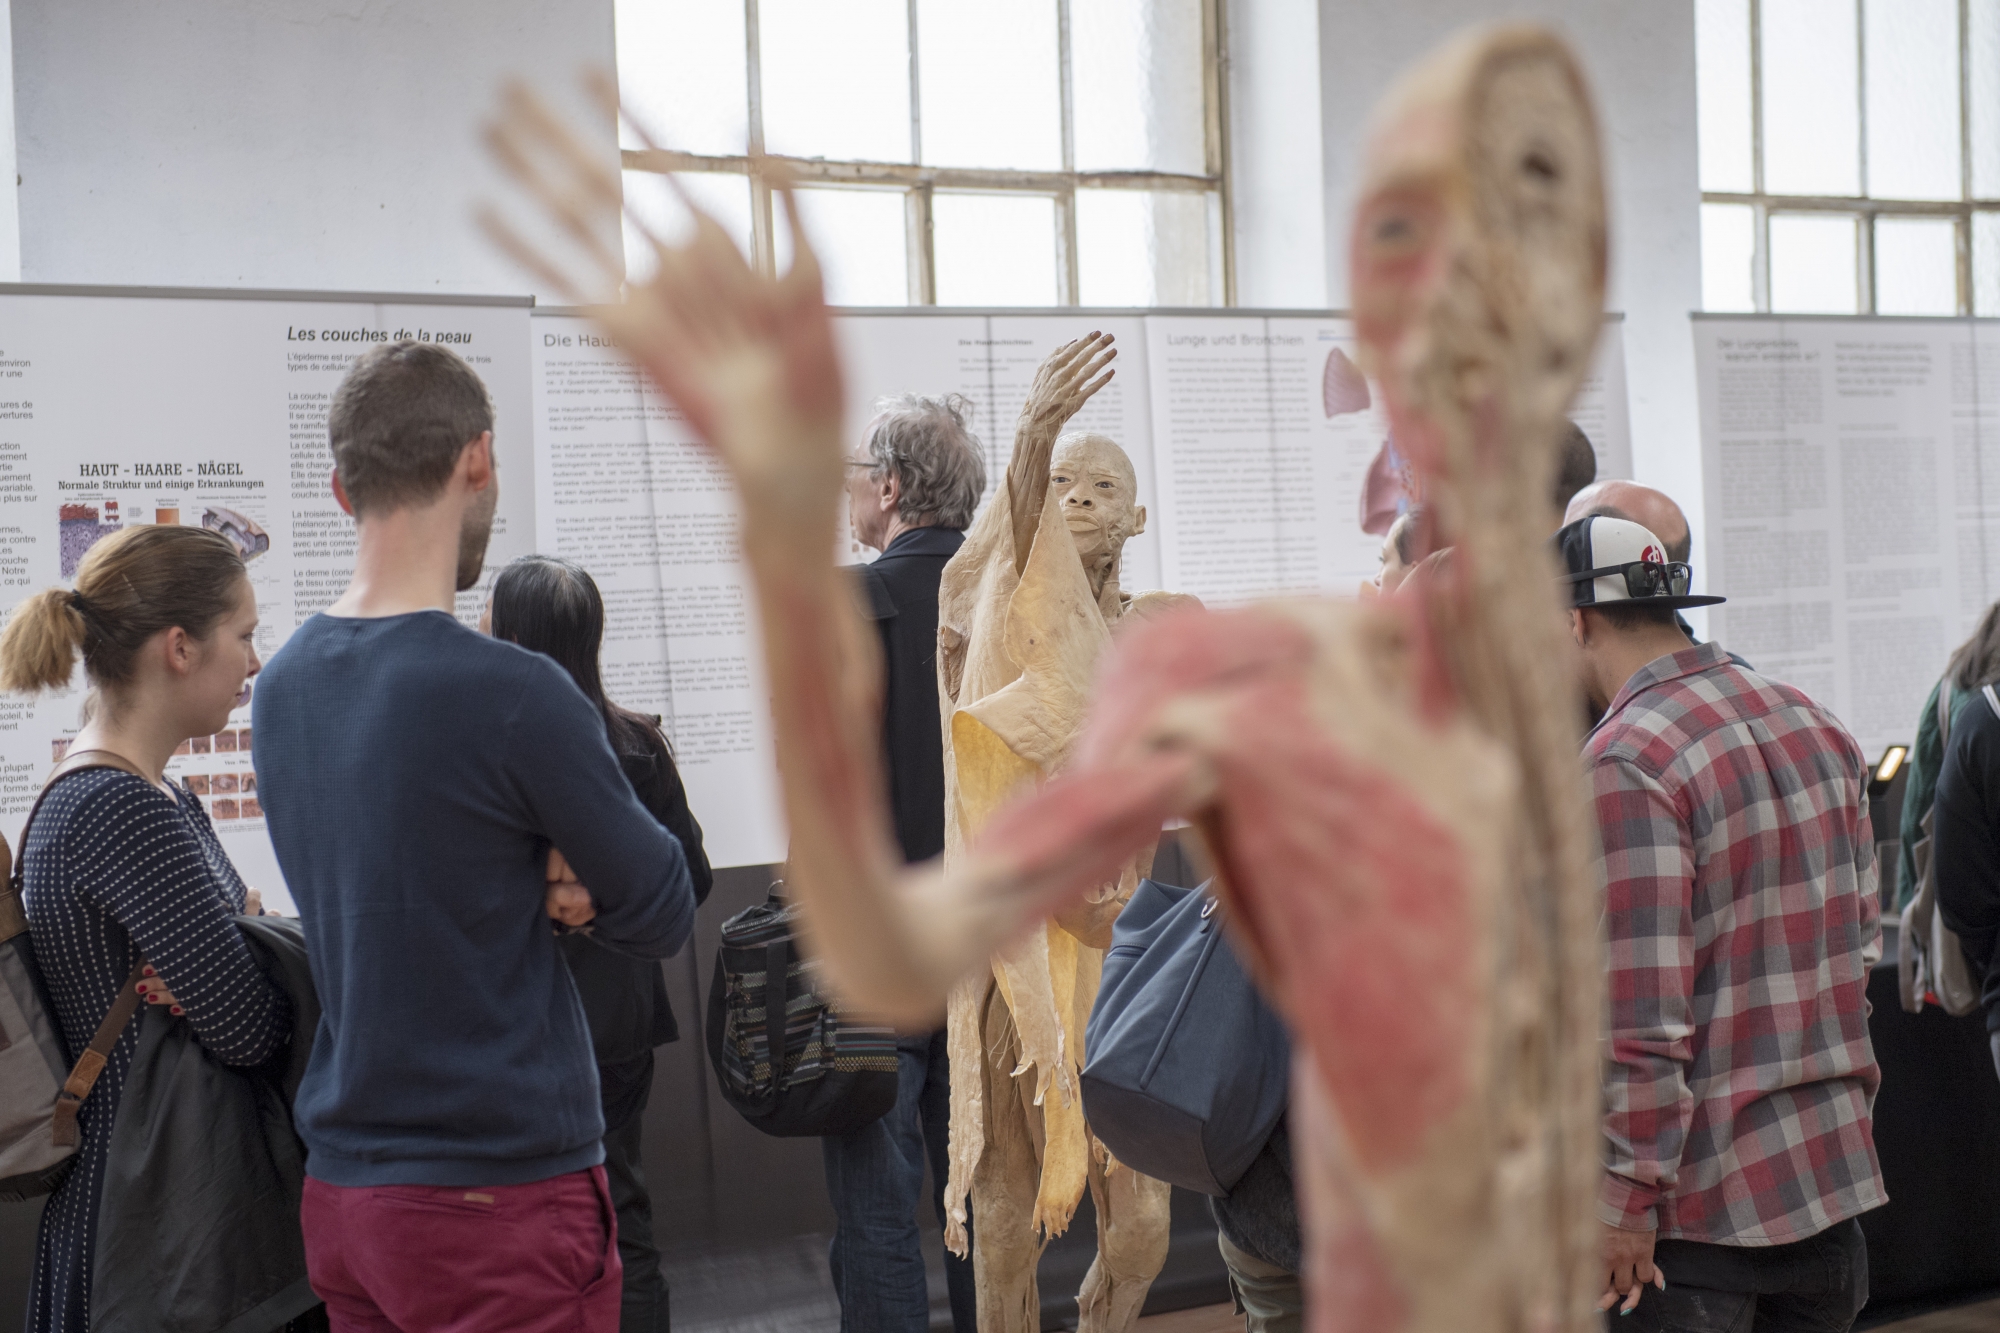 Après être passée par Berne, l'exposition "Bodies Exhibition" devait avoir lieu à Lausanne.